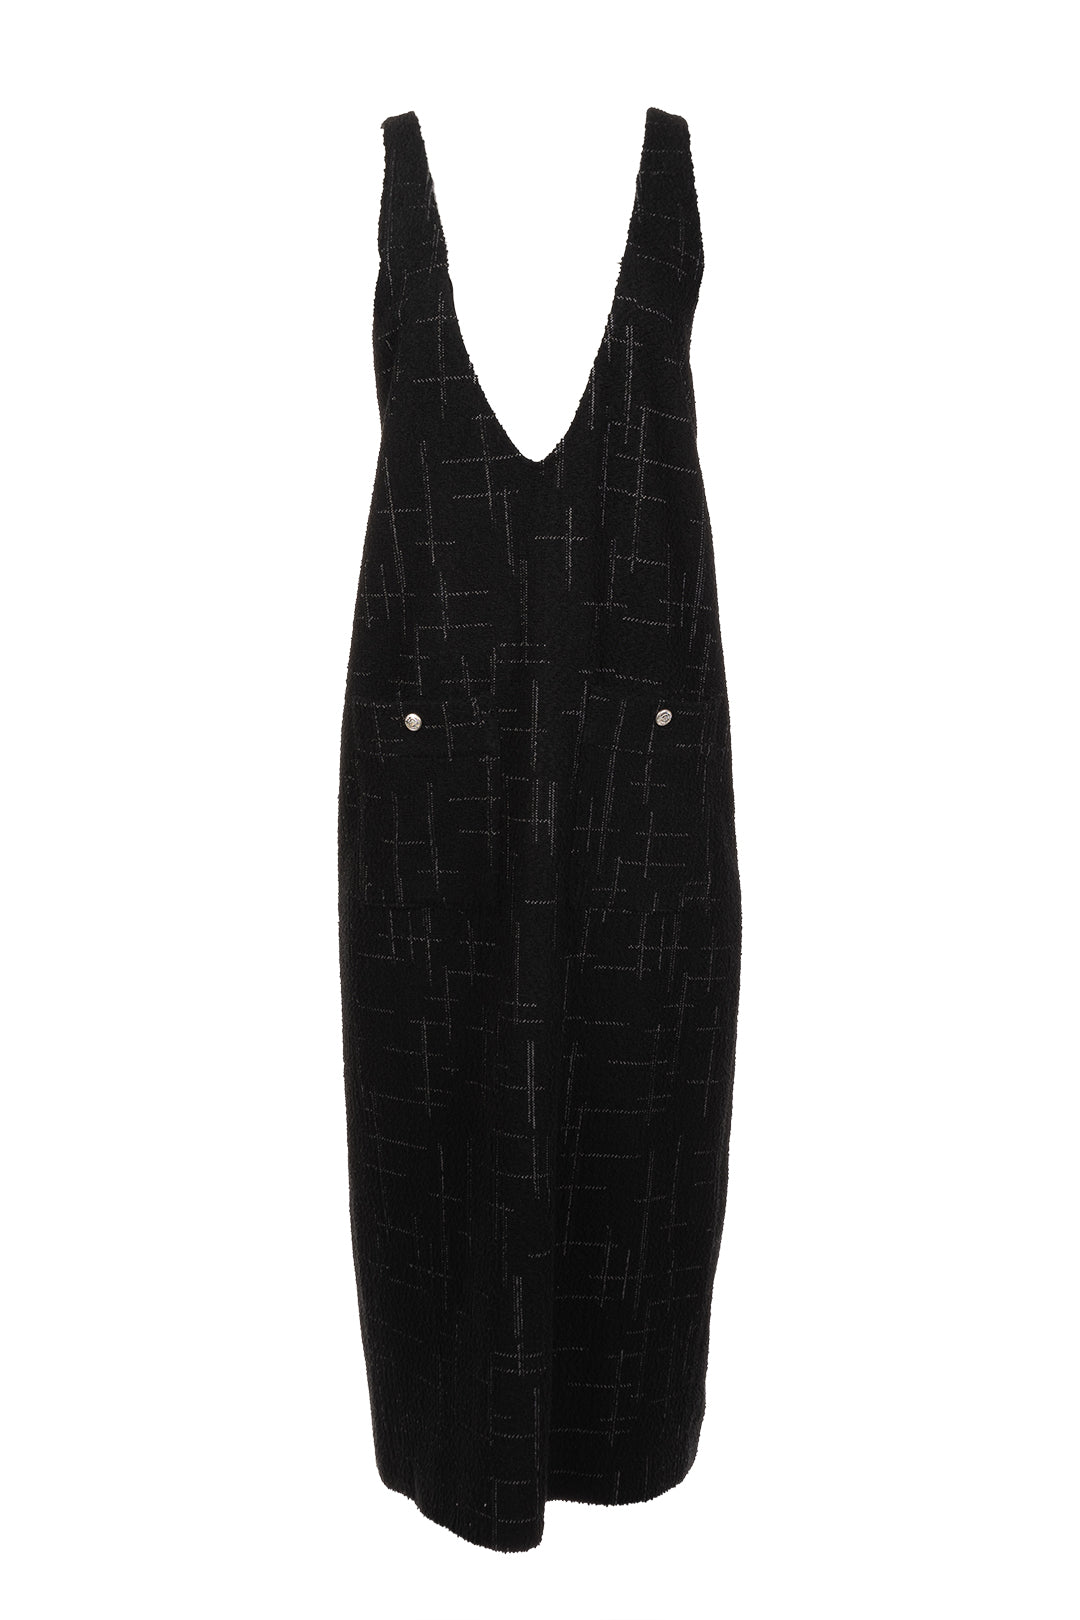 Long black V-neck dress | Harlem